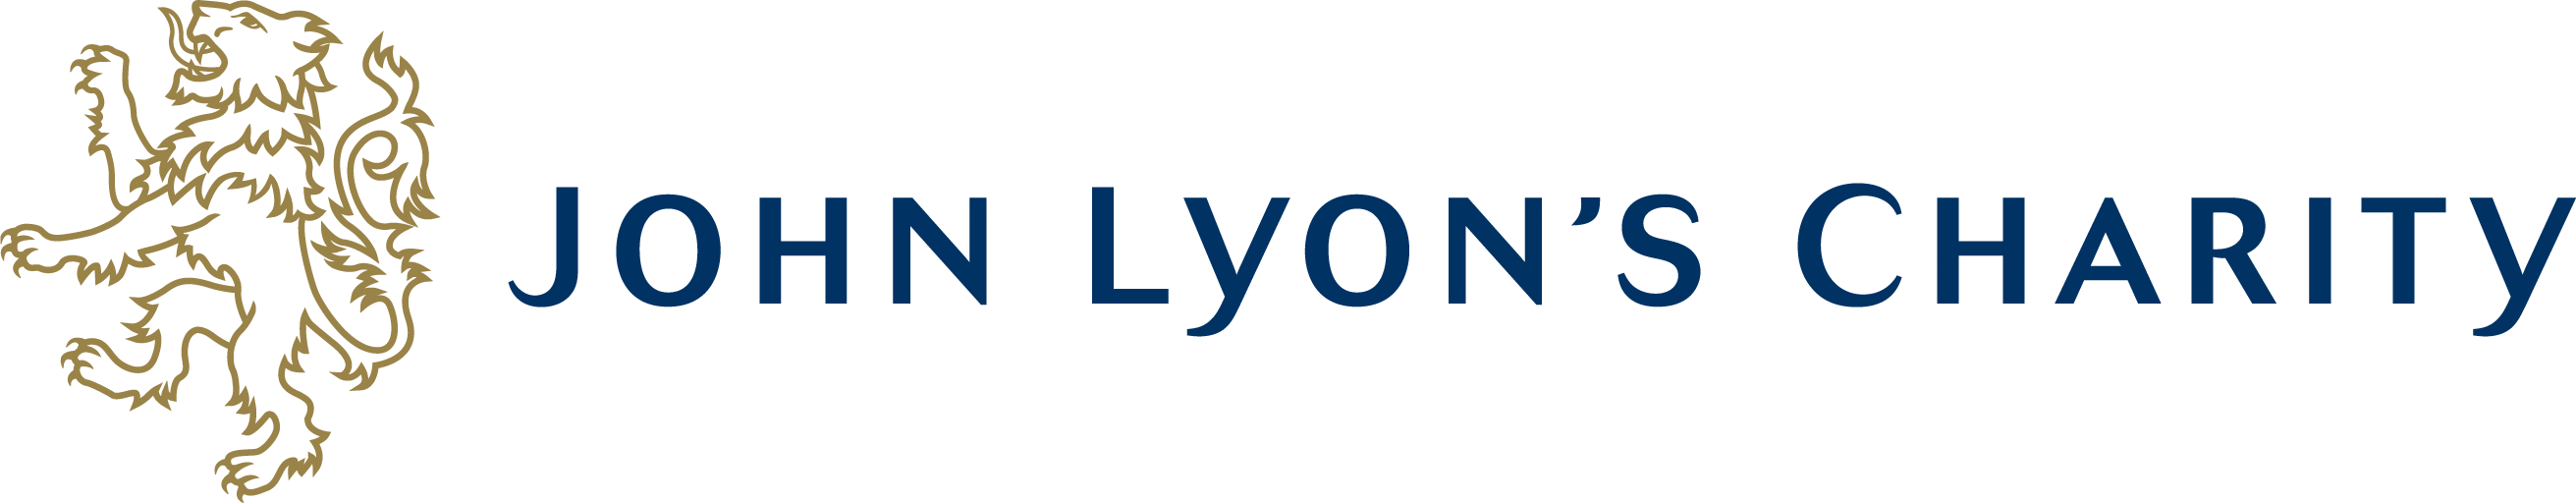 John Lyon's Charity logo